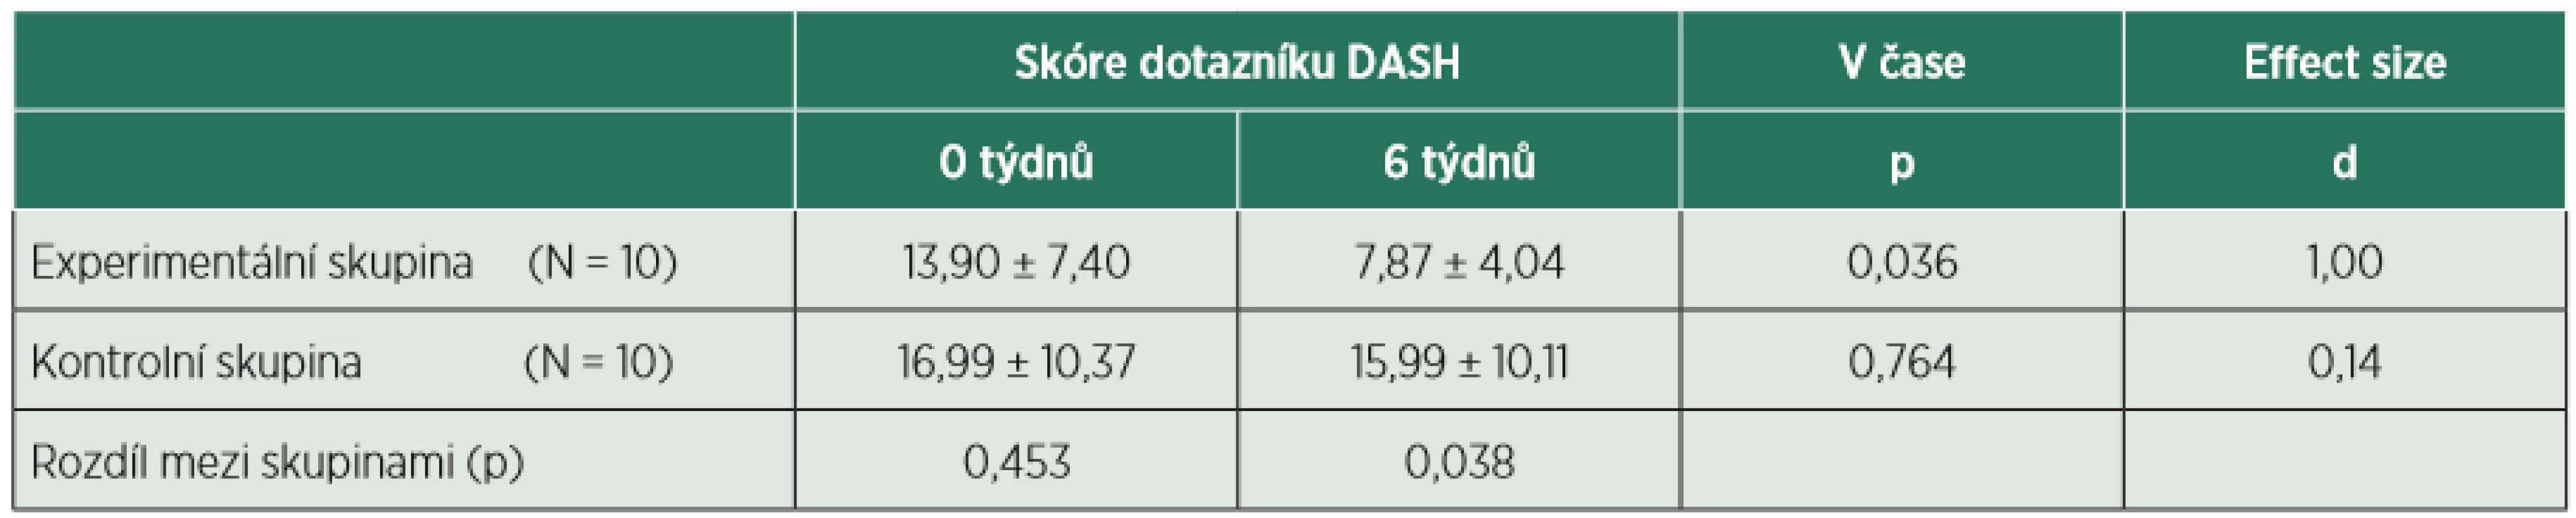 Průměr a statistický rozdíl dotazníku DASH v čase. 